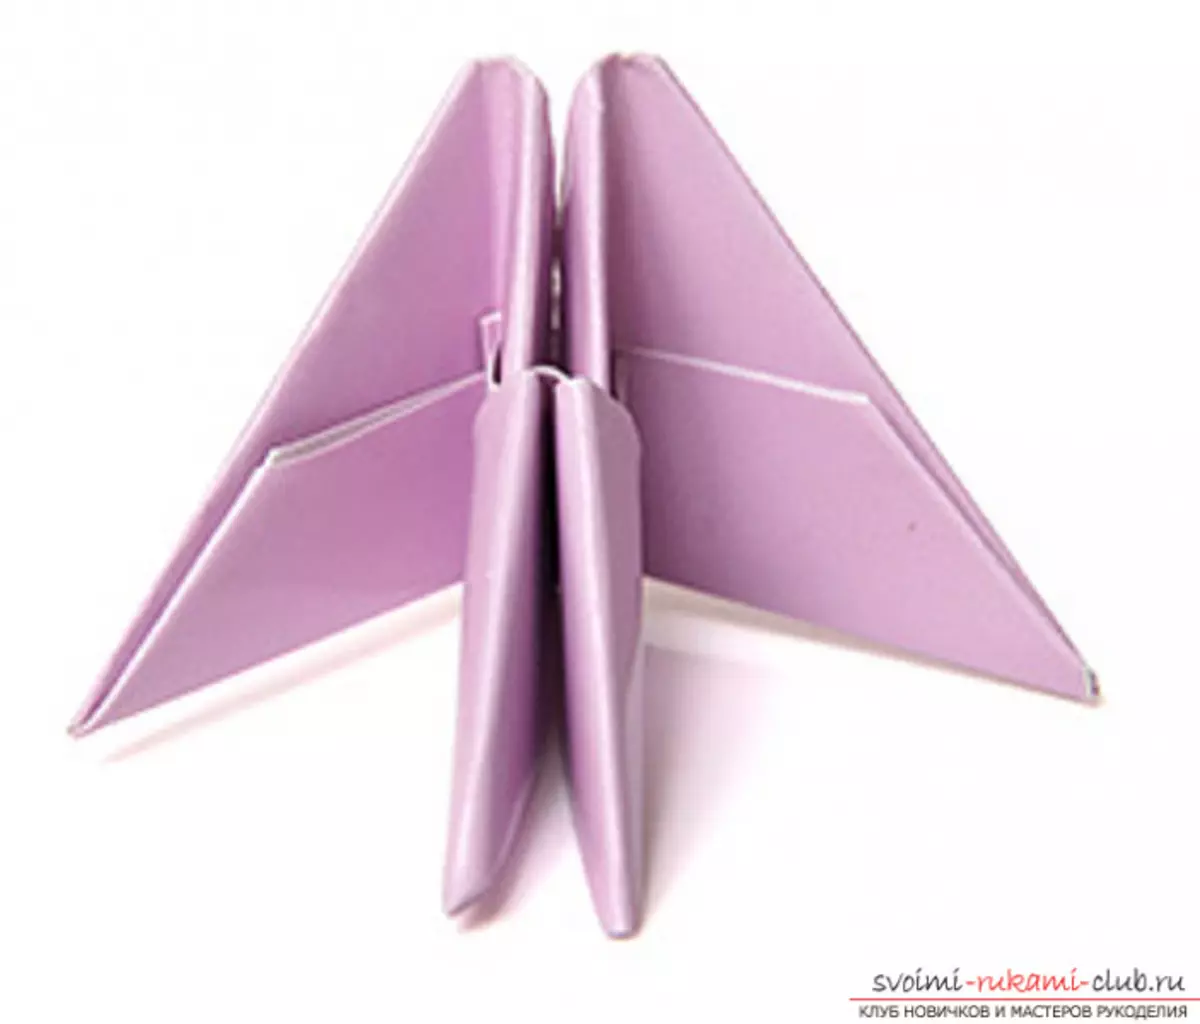 Lebed Origami aus Papier: So erstellen Sie Schritt für Schritt mit Fotos und Videos